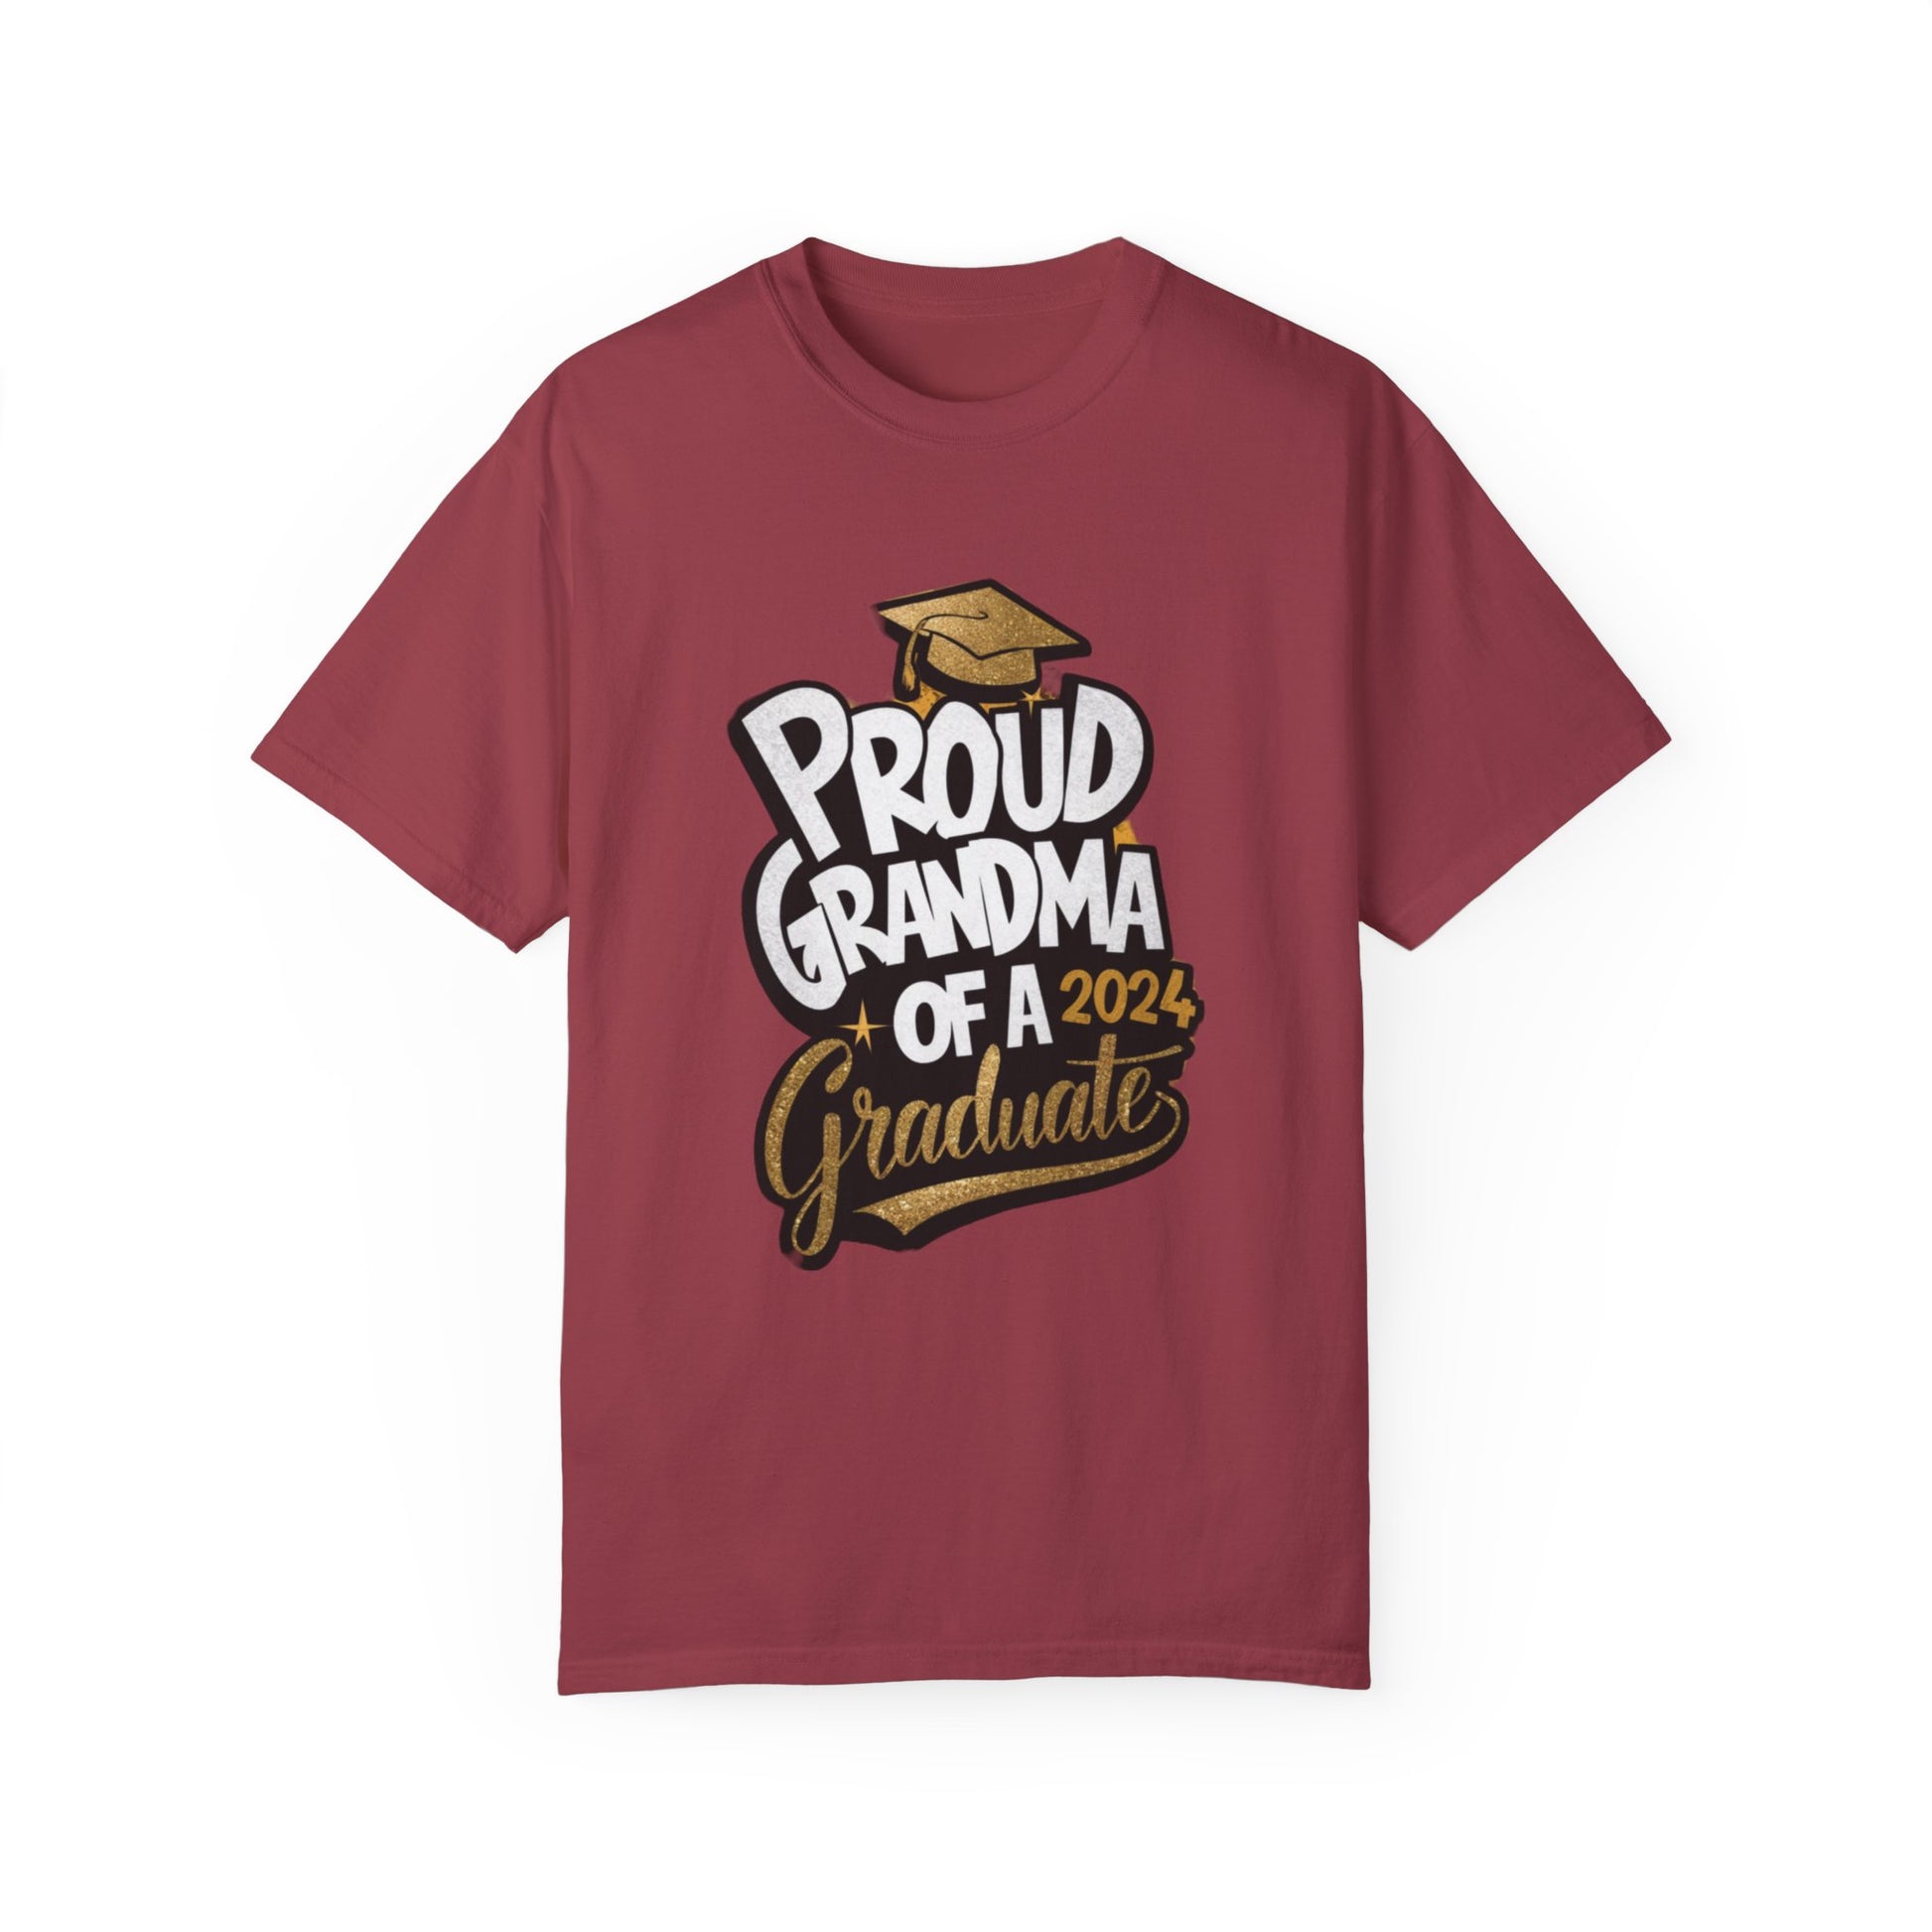 Proud of Grandma 2024 Graduate Unisex Garment-dyed T-shirt Cotton Funny Humorous Graphic Soft Premium Unisex Men Women Chili T-shirt Birthday Gift-7